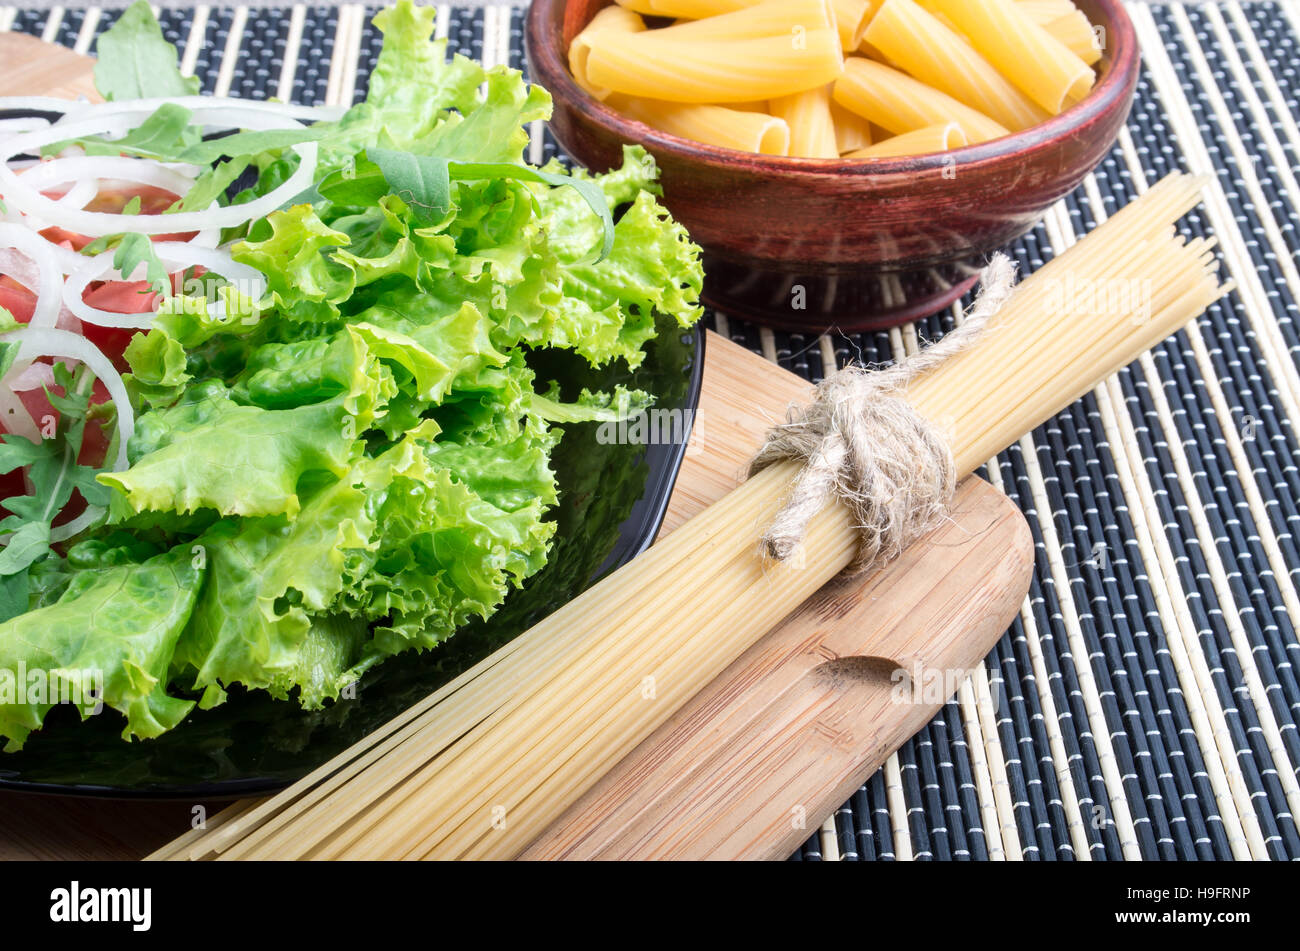 Frischer grüner Salat auf einem Tisch neben den Zutaten für Kochen Nudeln und Spaghetti hautnah Stockfoto